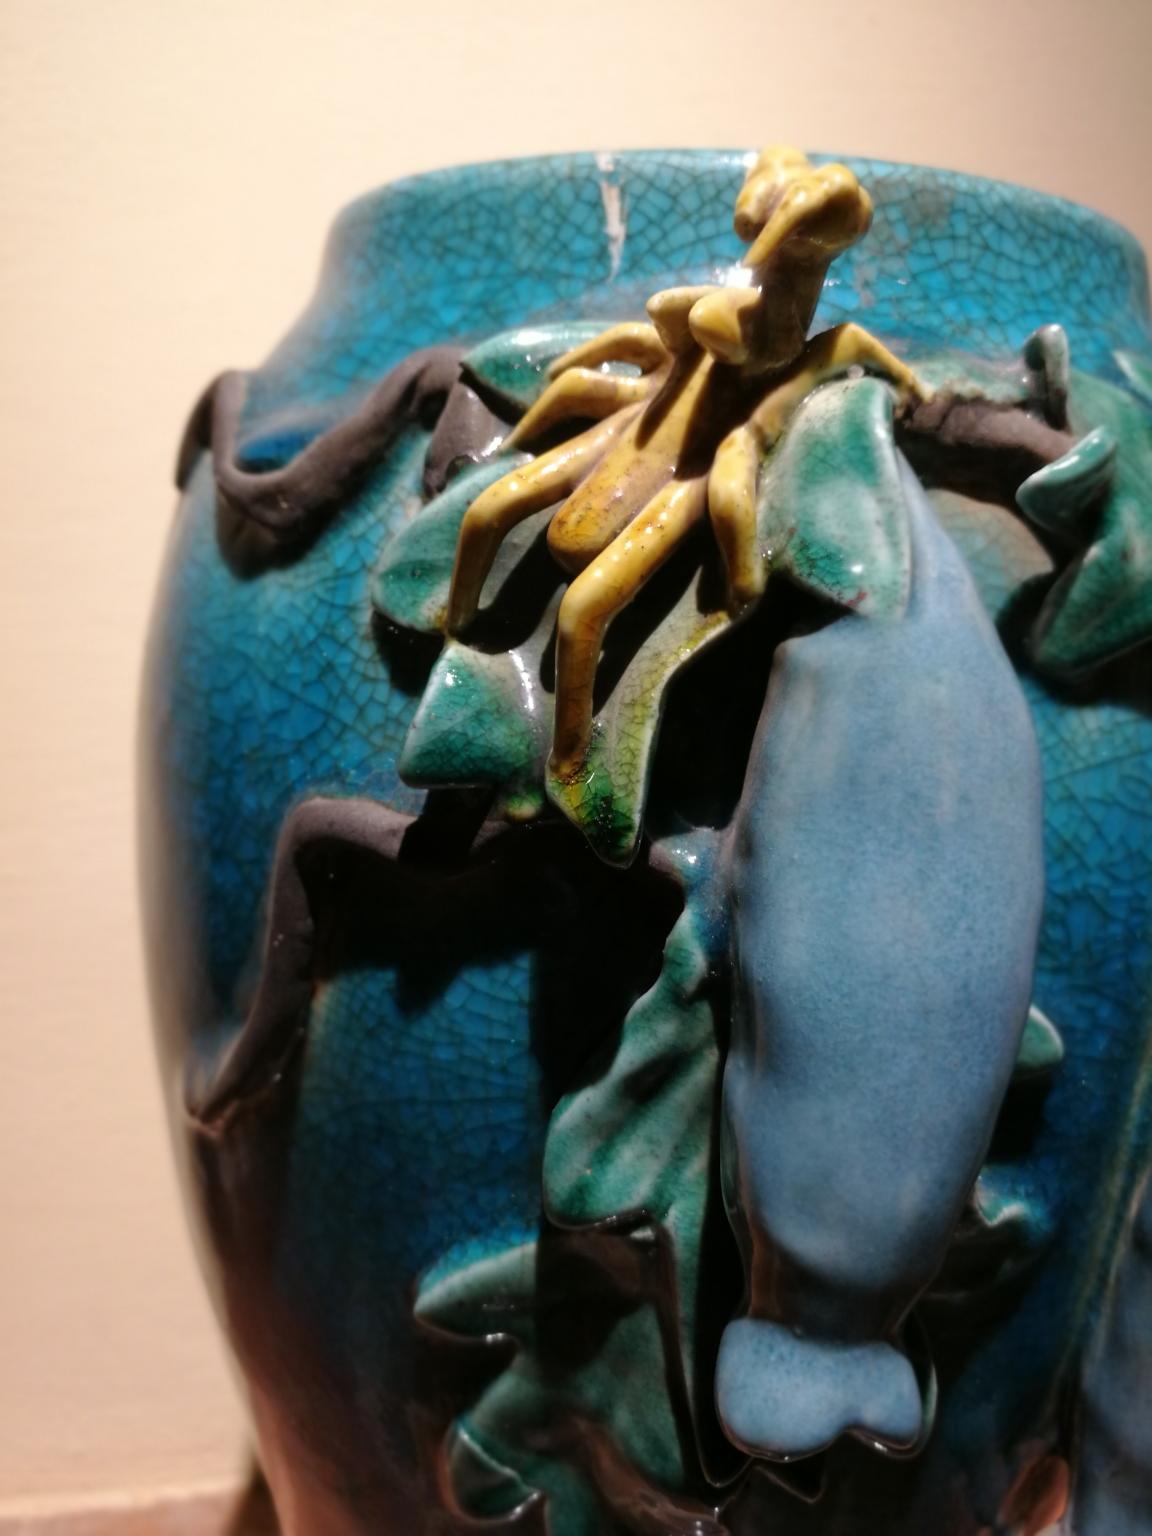 Vaso in ceramica smaltata azzurra (h 33 cm, piede 13 cm, bocca 22 cm)  des ramifications raffigurantes d'edera, des campanules azzurre et une cavalletta.
Proveniente da una manifattura di Secolo attiva alla metà del secolo scorso.